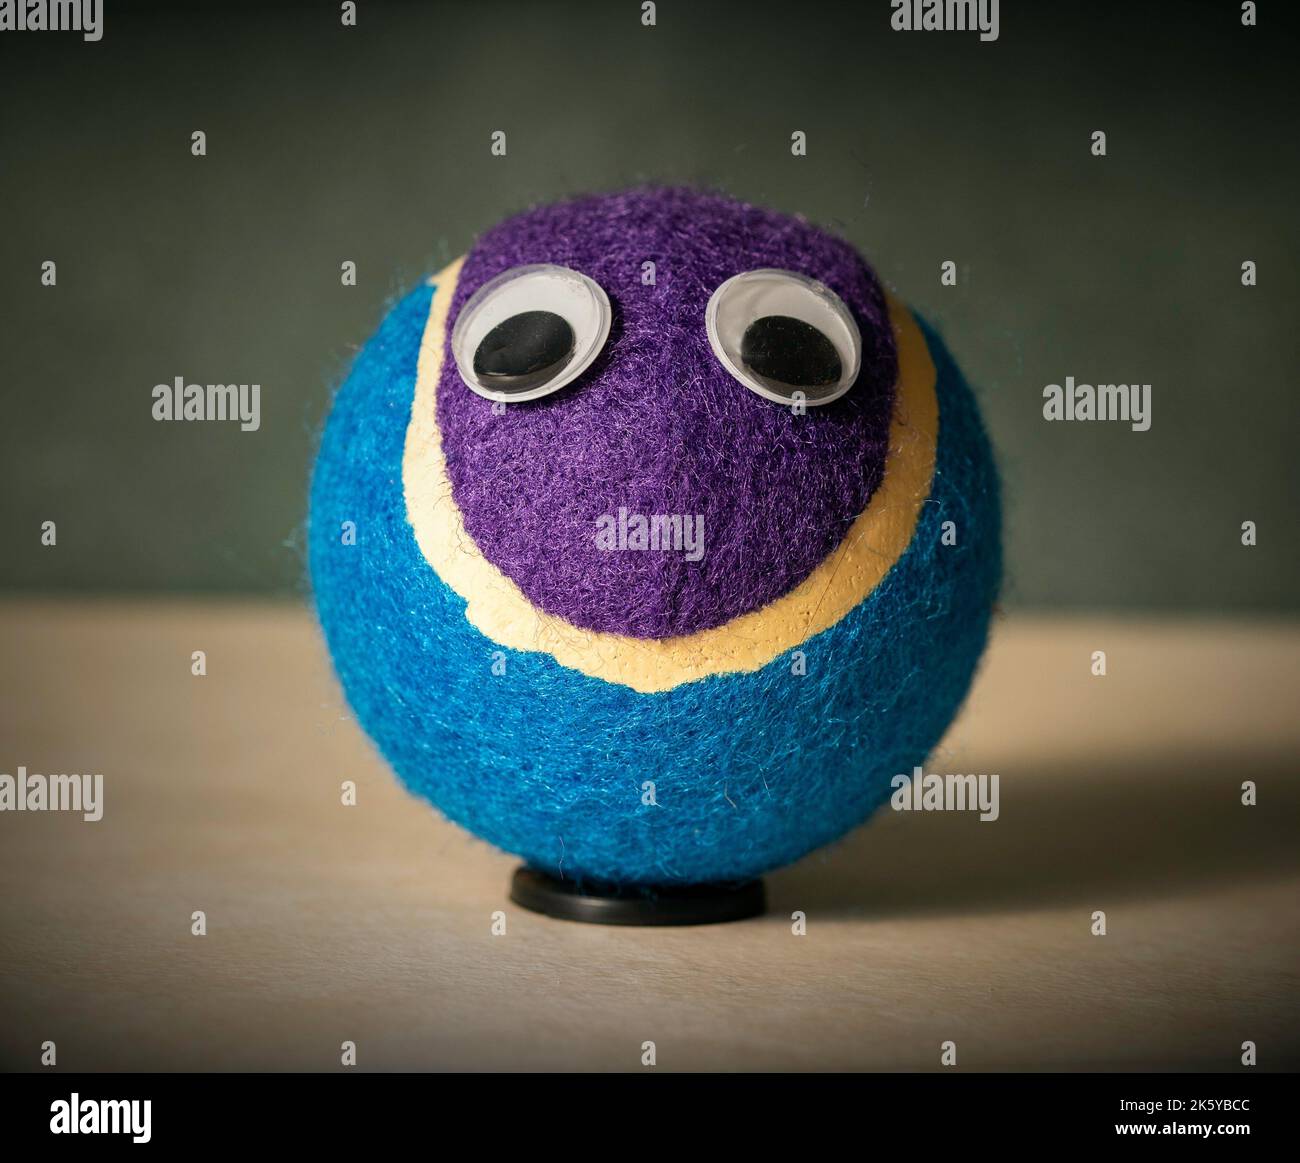 Gros plan d'une balle de tennis violette et bleue avec des yeux en  plastique collés sur le dessus Photo Stock - Alamy